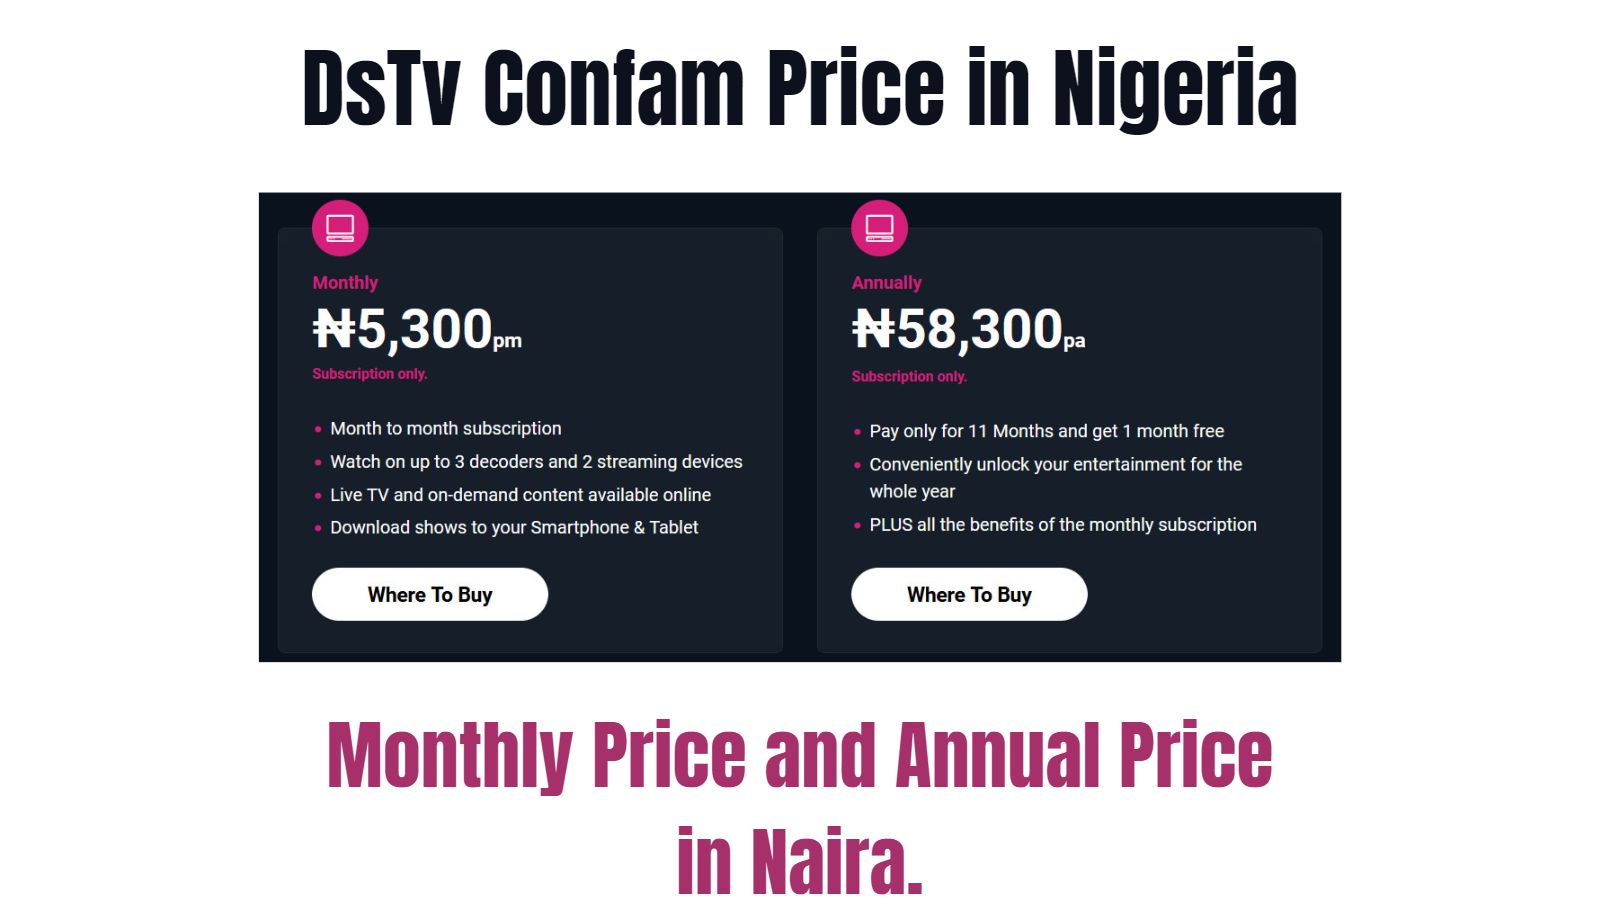 DsTv Confam Subscription Price in Nigeria